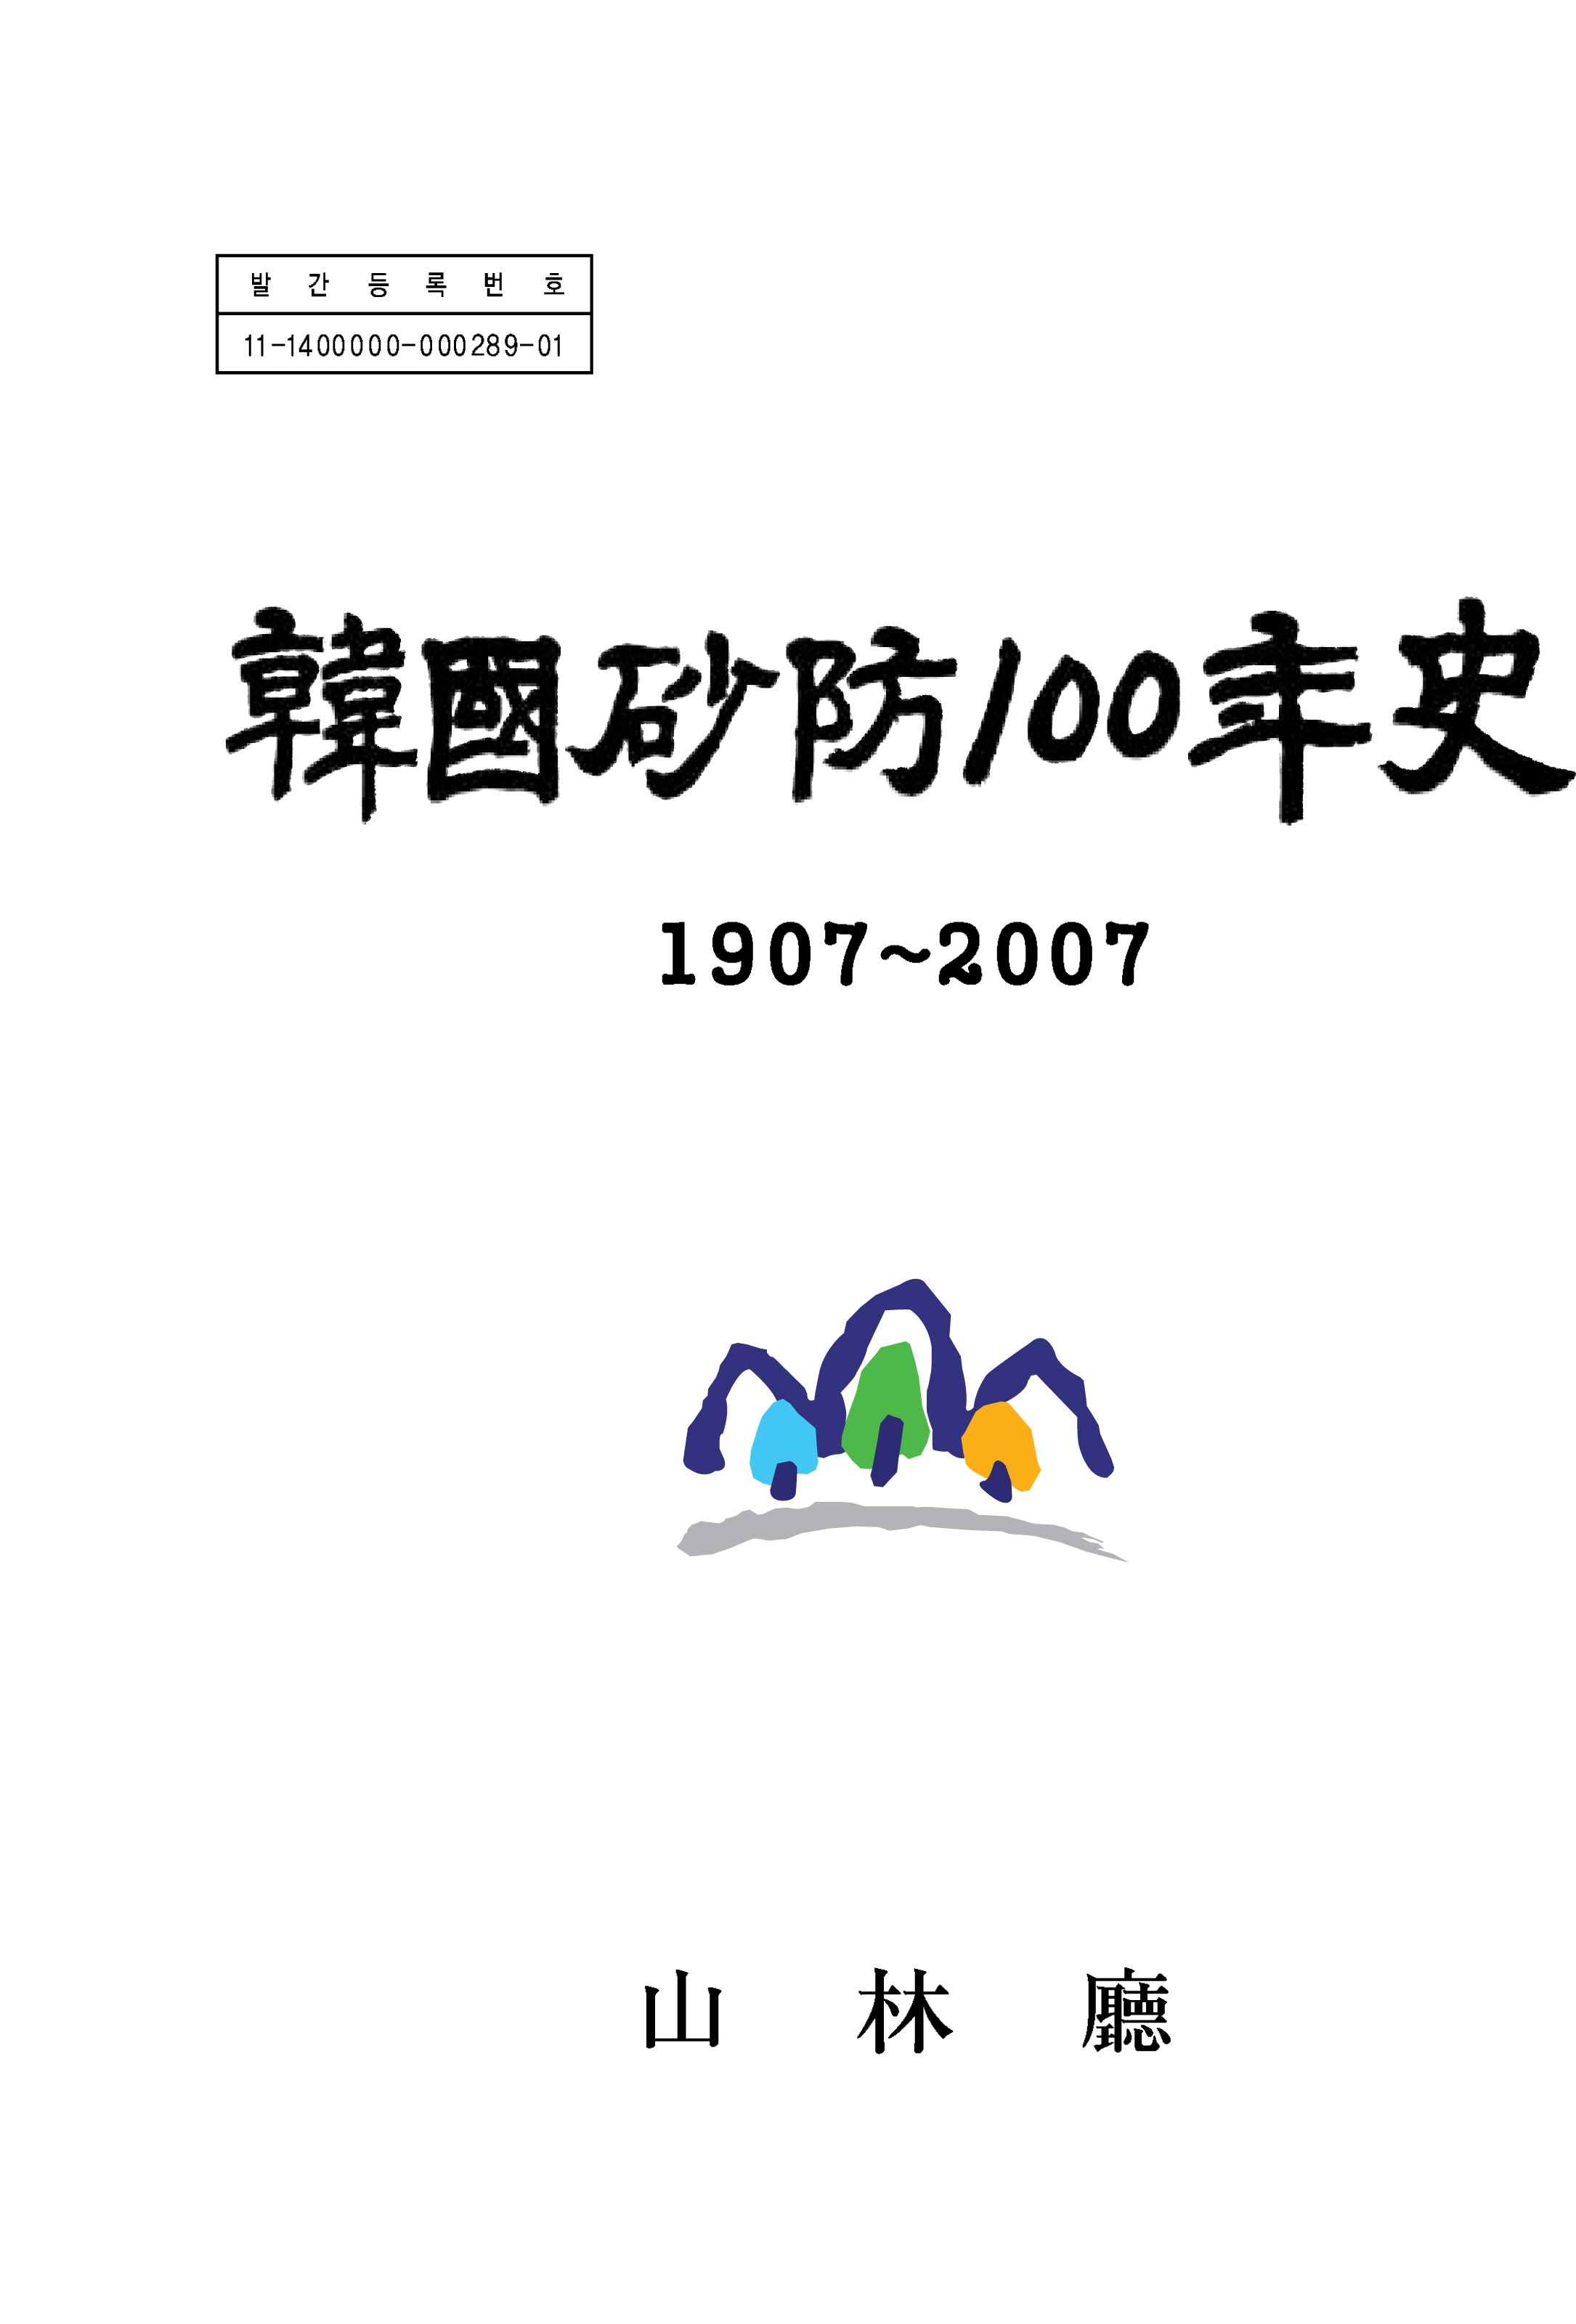 한국사방 100년사 표지